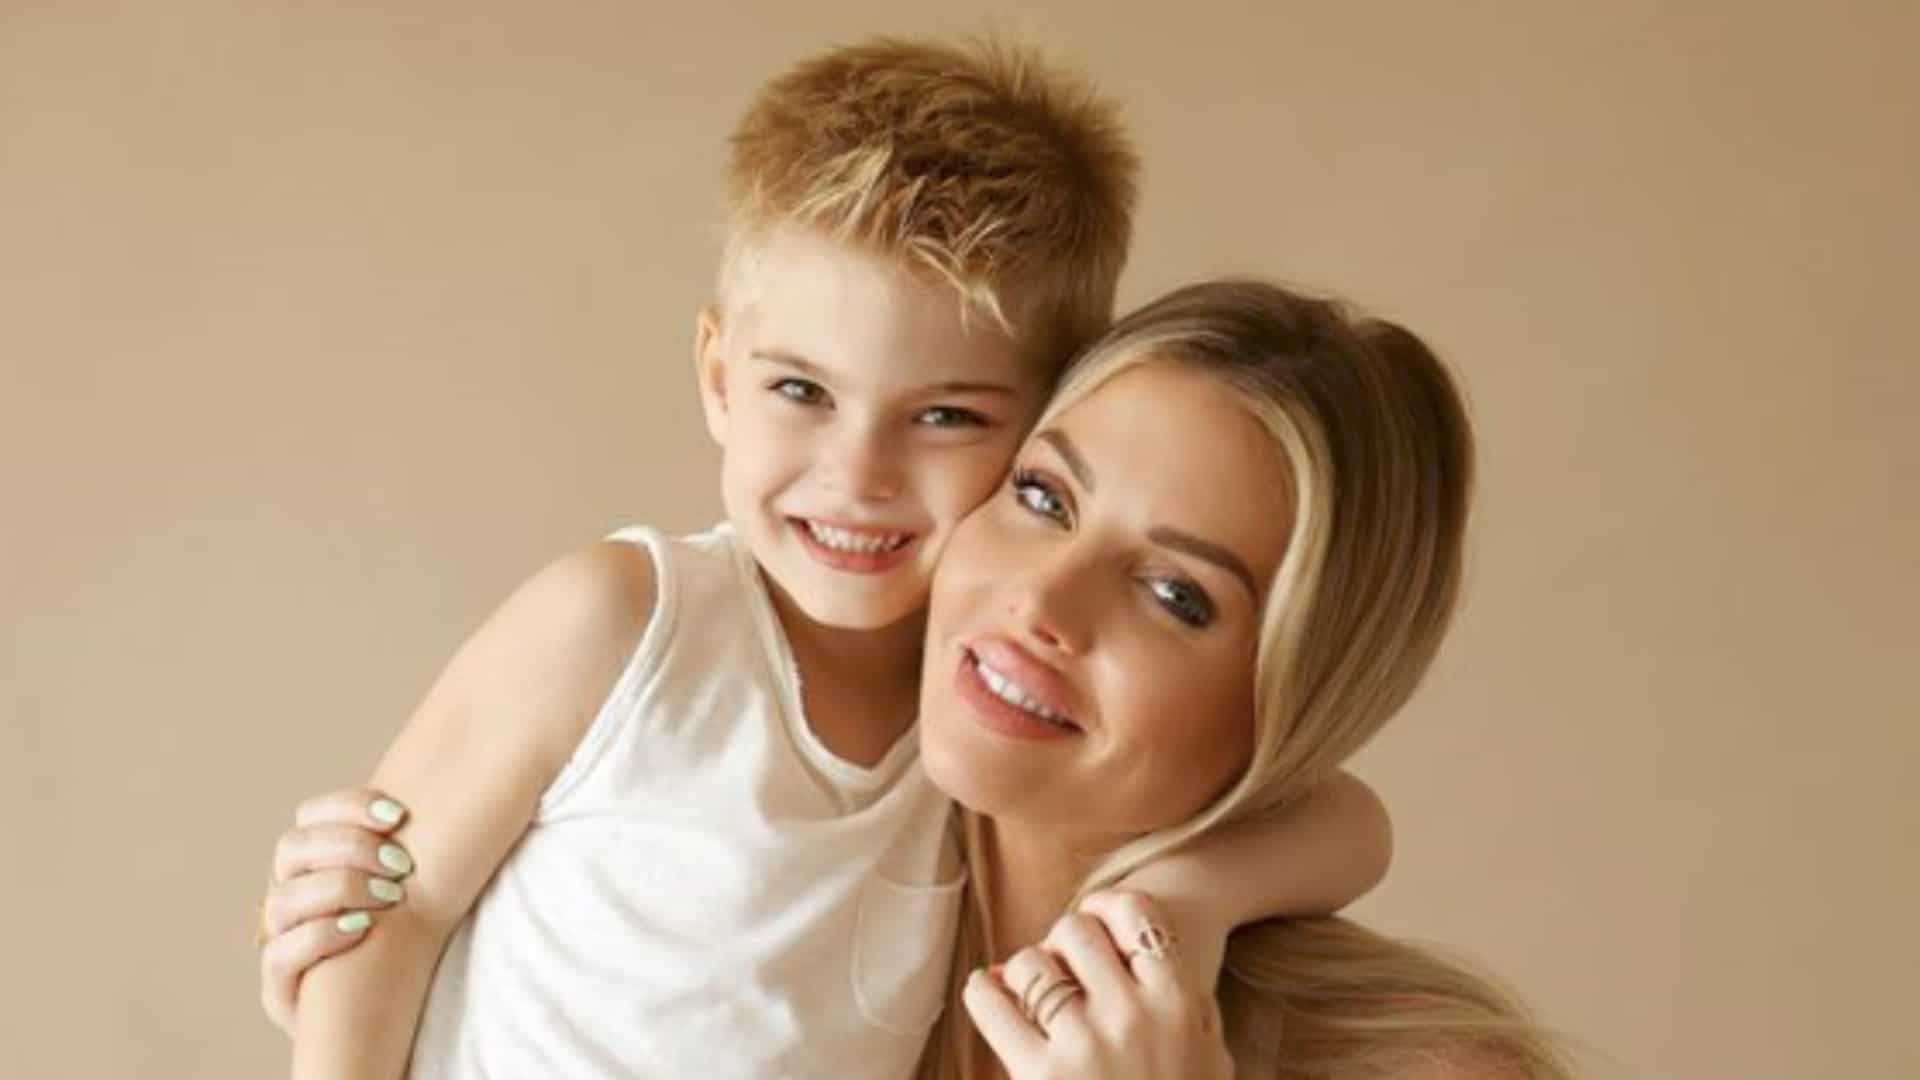 'Ne jamais traiter un enfant de...' : Jessica Thivenin vivement critiquée par les internautes après avoir grondé son fils